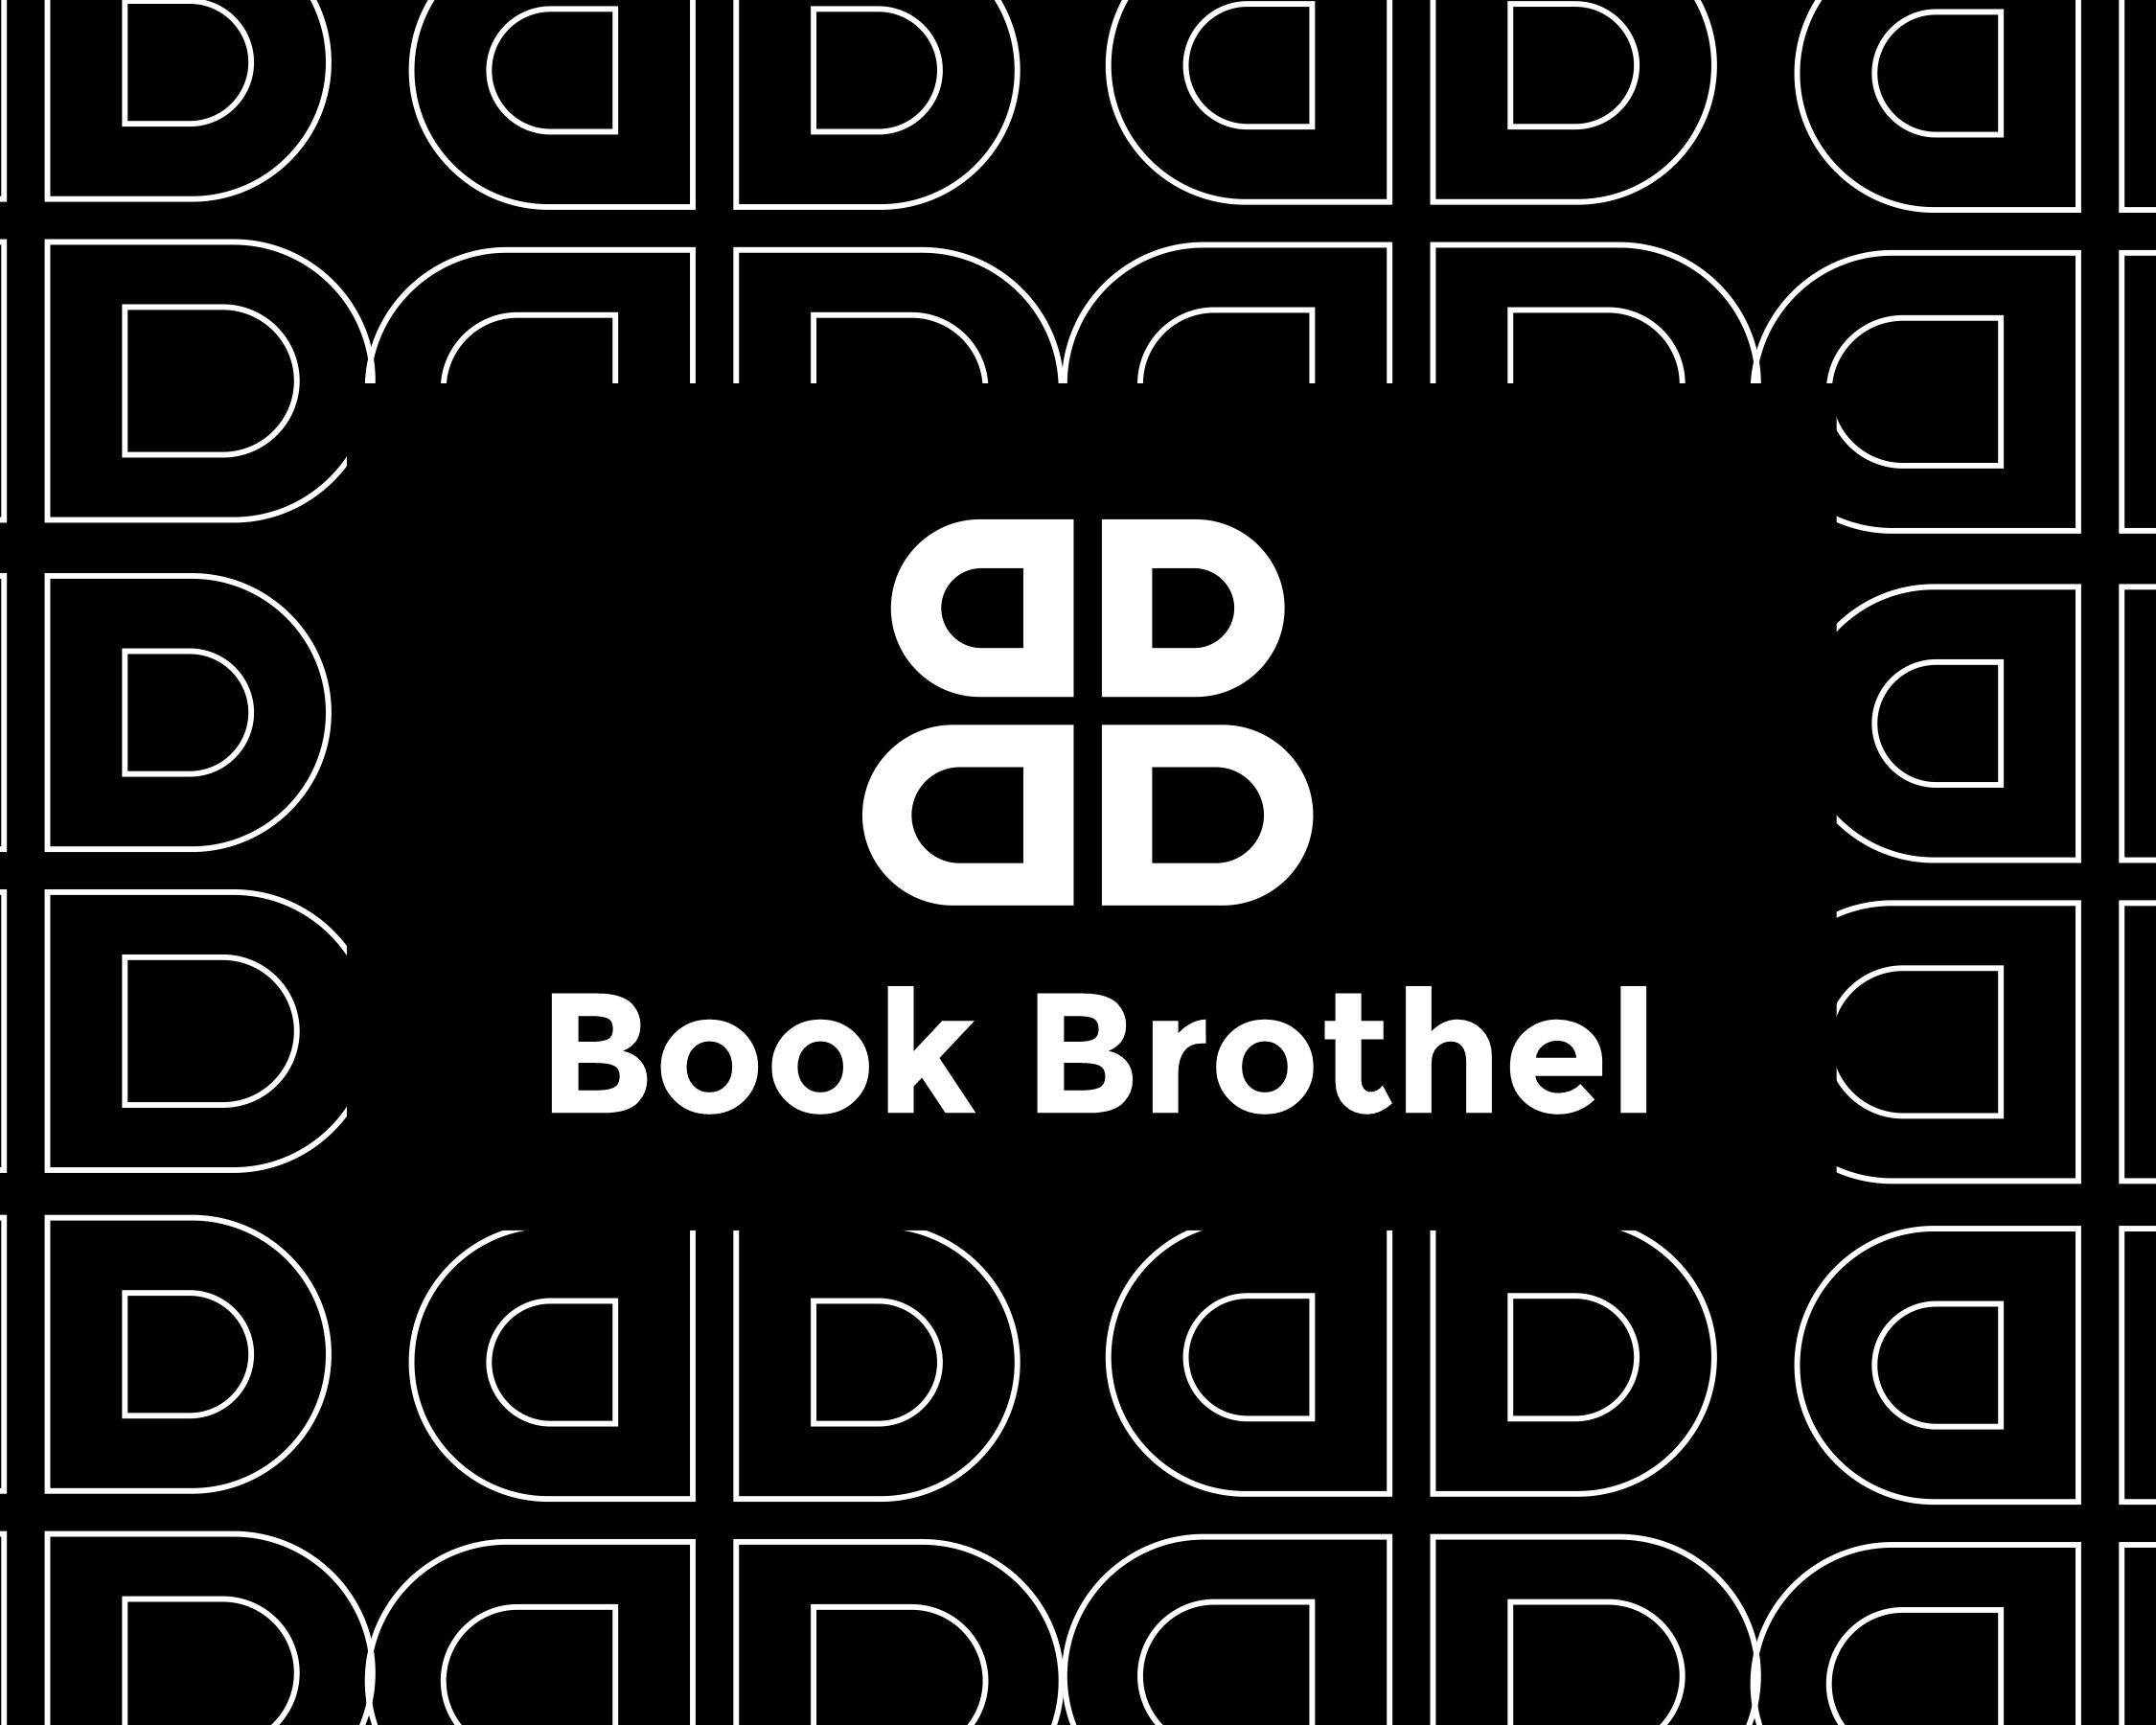 book brothel2.jpg